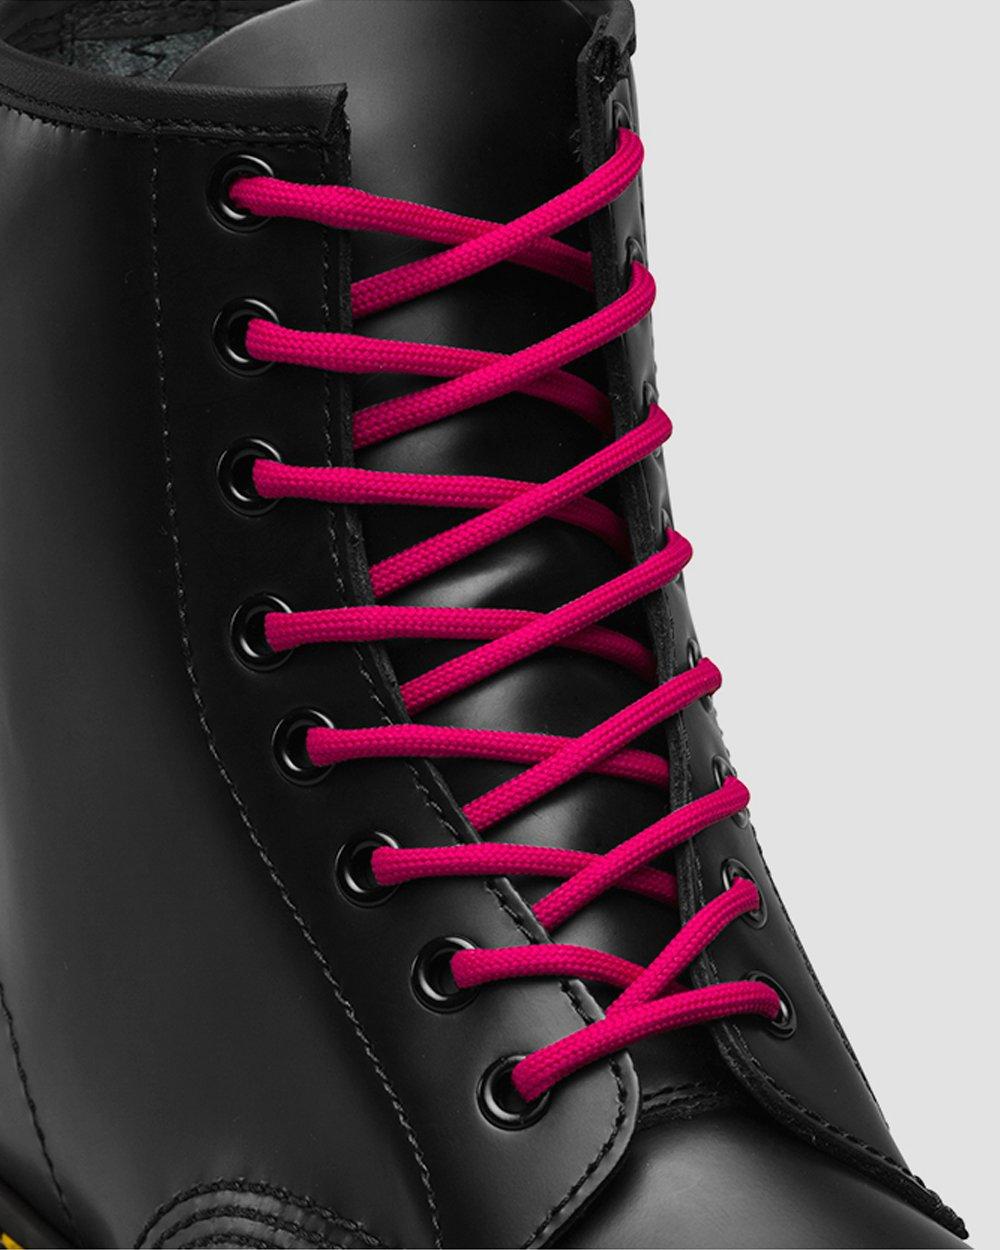 doc martens pink laces